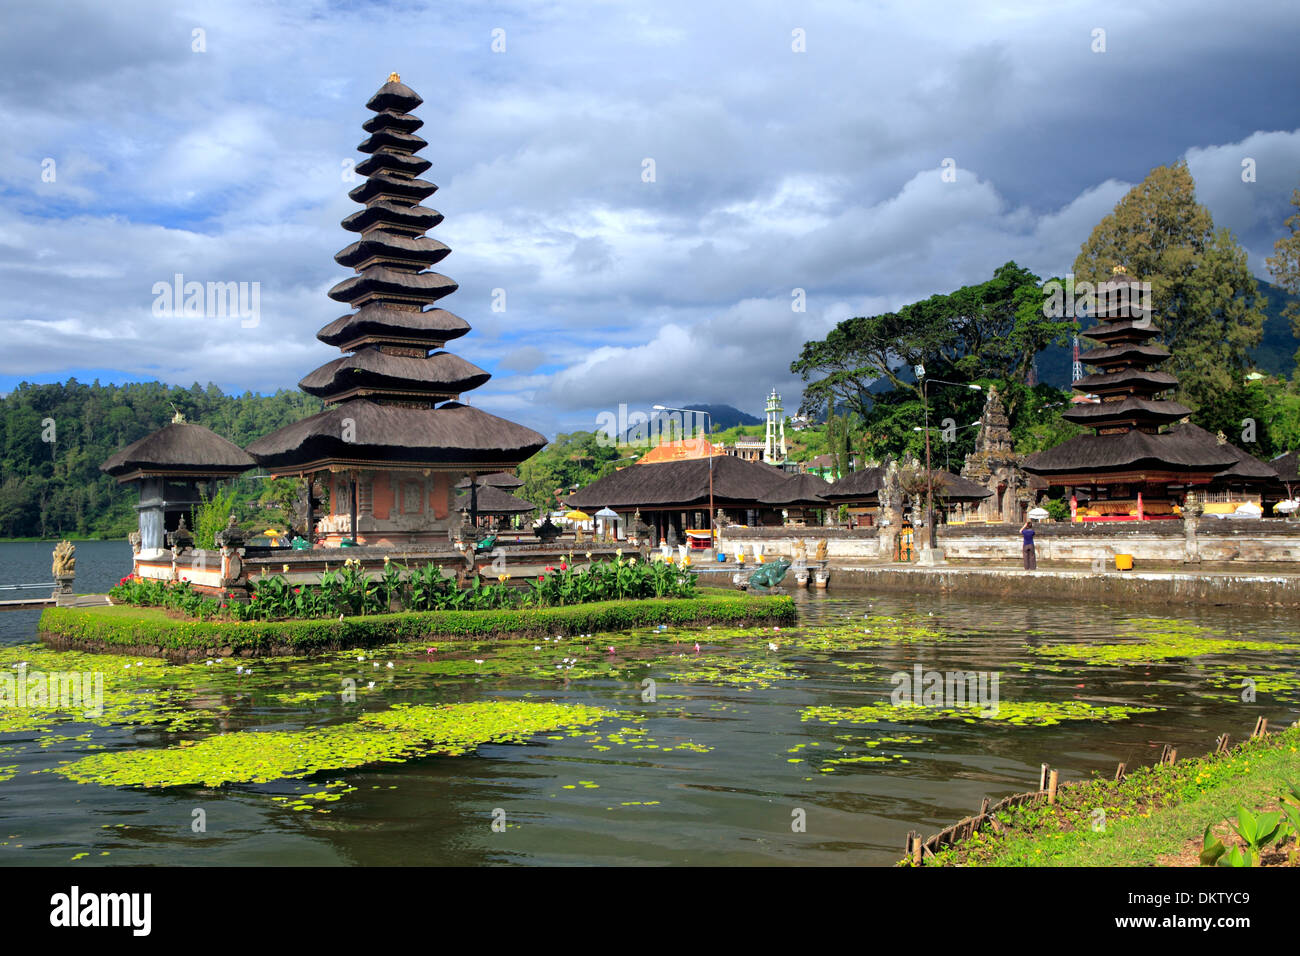 Pura Ulun Danu Bratan temple, Candikuning, lake Bratan, Bali, Indonesia  Stock Photo - Alamy